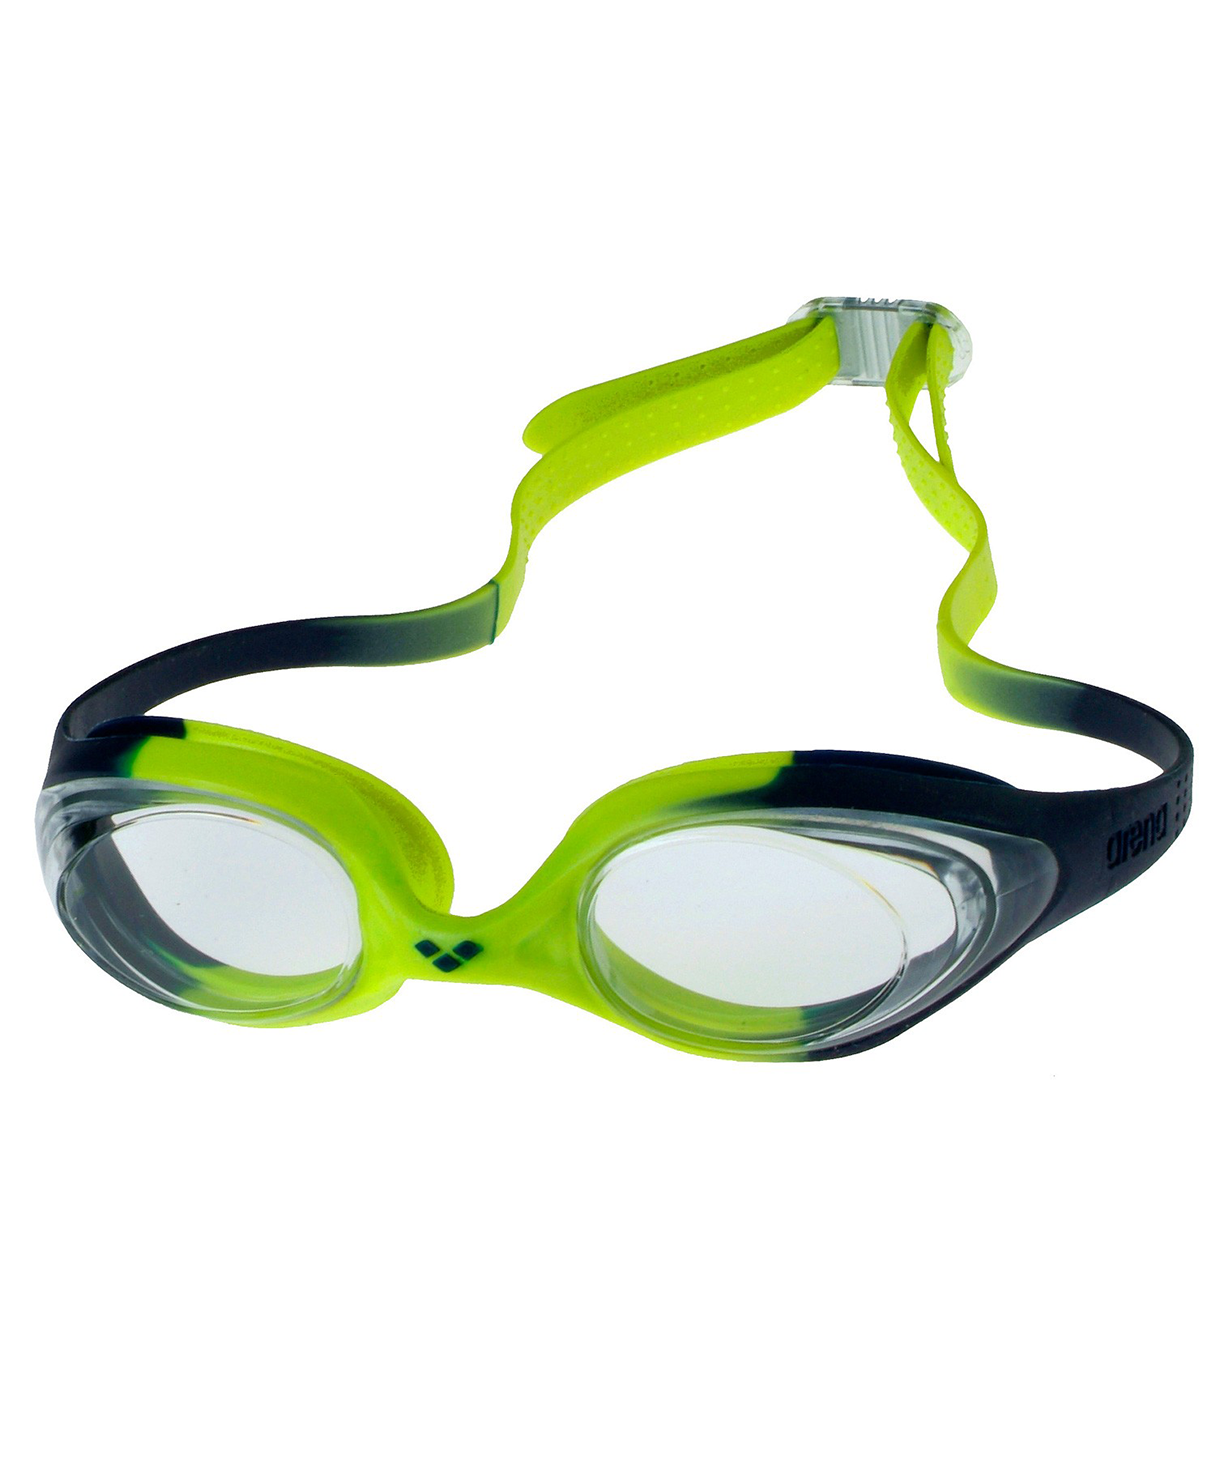 Arena jr. Очки Арена для плавания детские. Arena очки для плавания детские. Spider Jr Арена очки. Очки Arena Millennium для плавания.